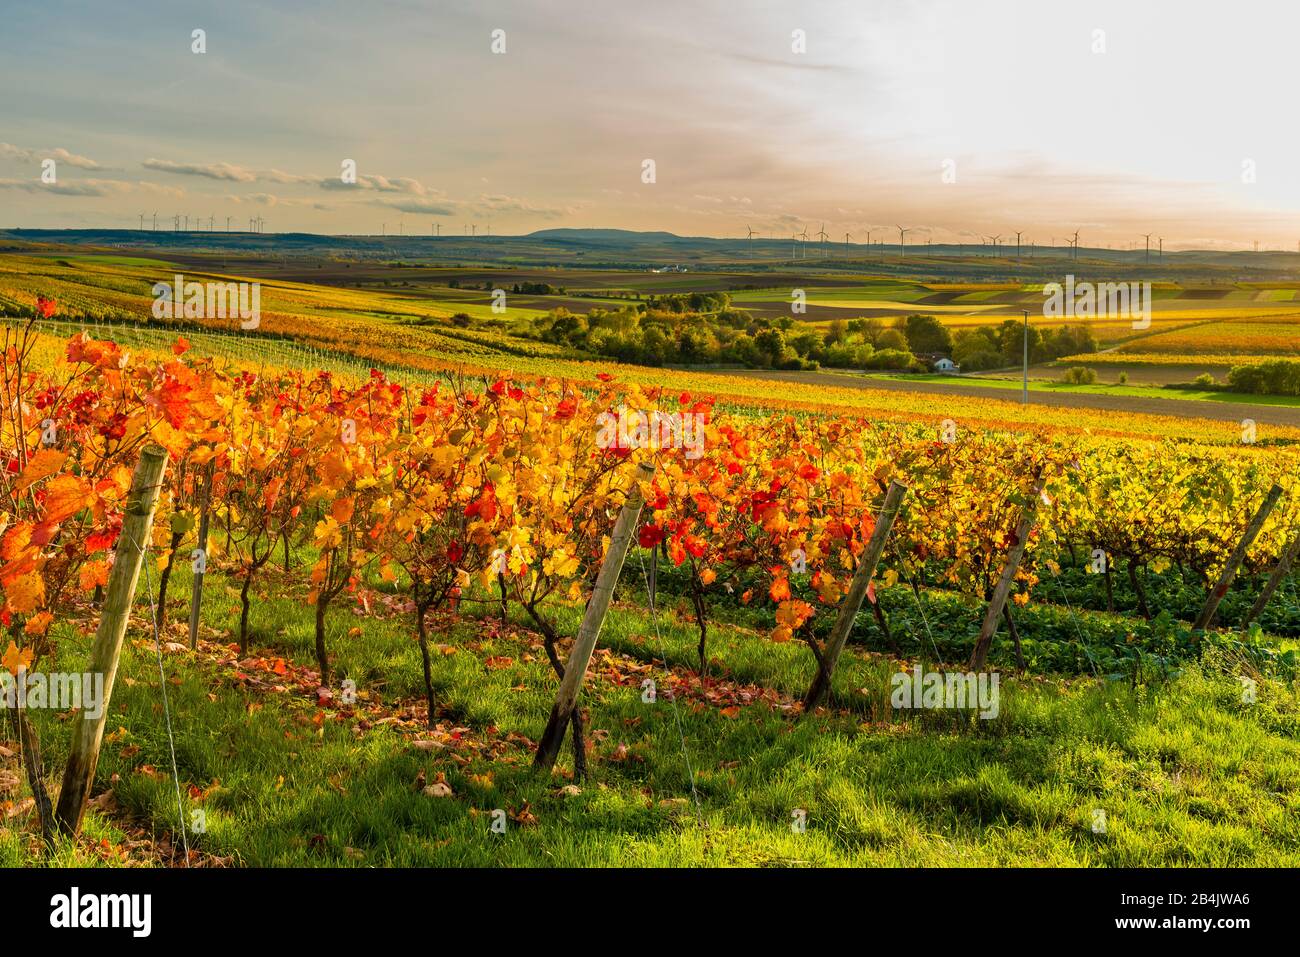 Autunno in vigna in un paesaggio dolcemente ondulato a Rheinhessen, ricchi colori luminosi in ottobre, atmosfera serale con luce calda, il Golden ottobre al suo meglio, Foto Stock